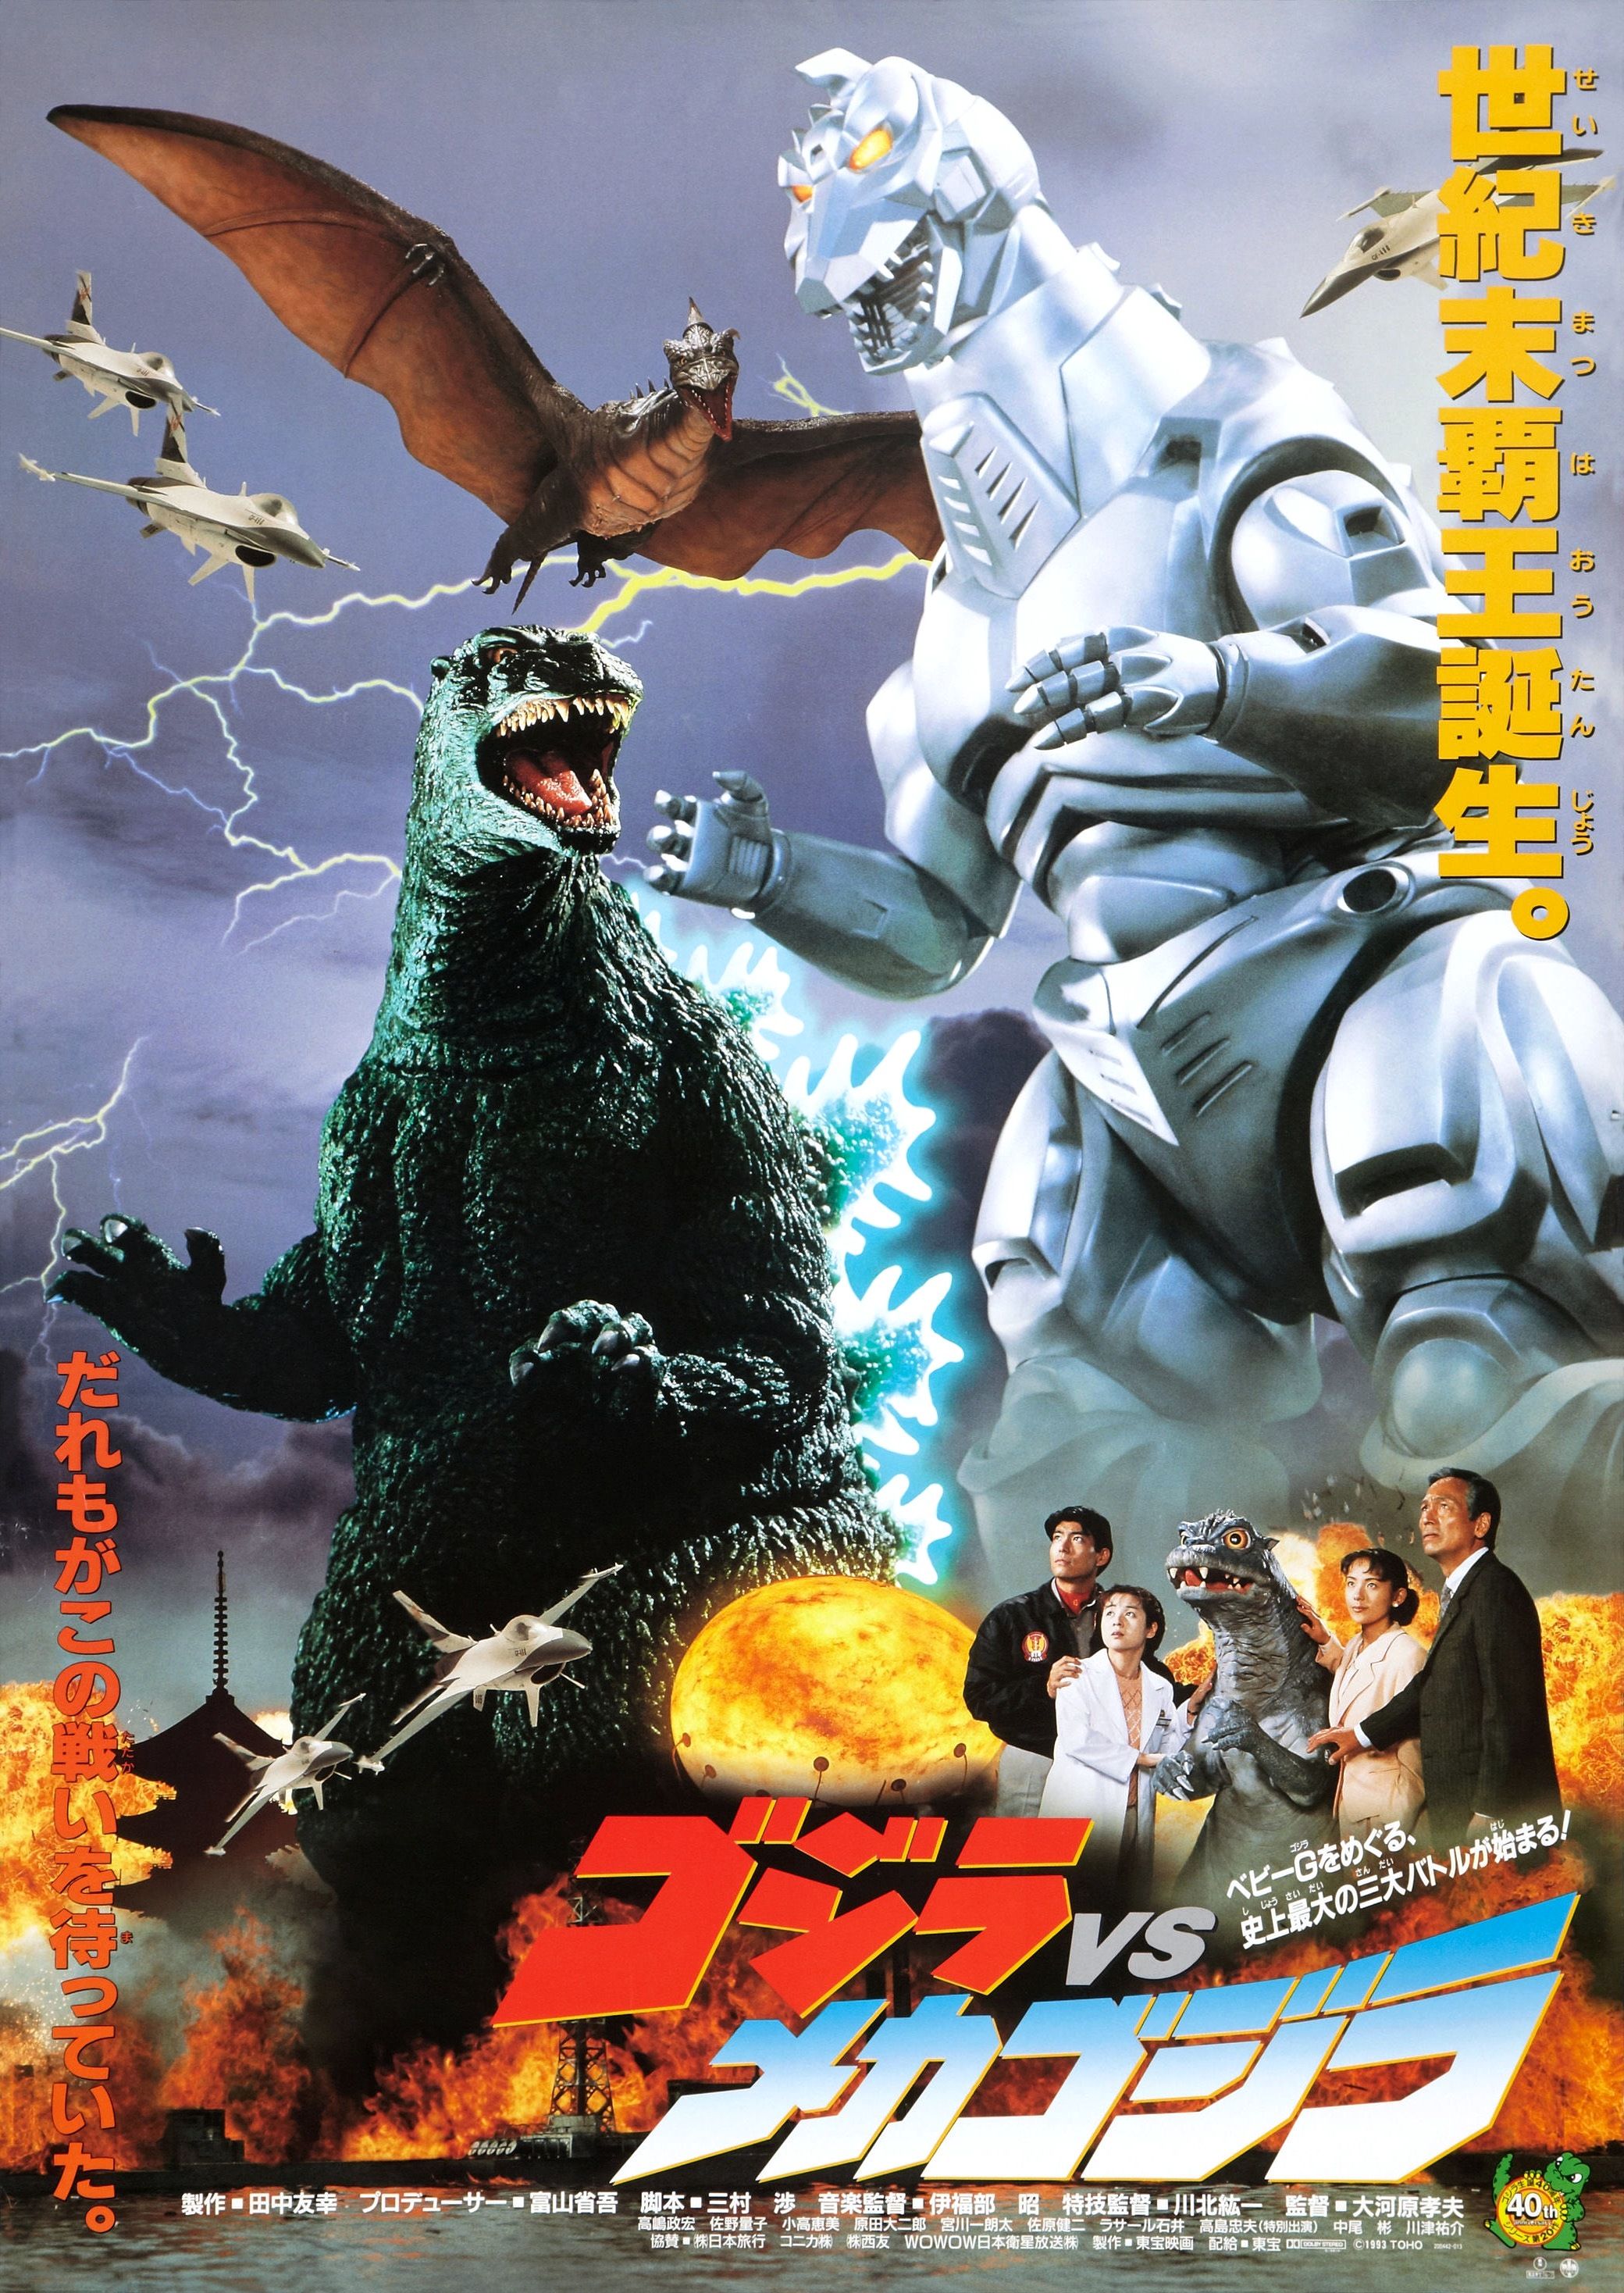 Godzilla Vs. Mechagodzilla wallpaper, Movie, HQ Godzilla Vs. Mechagodzilla pictureK Wallpaper 2019